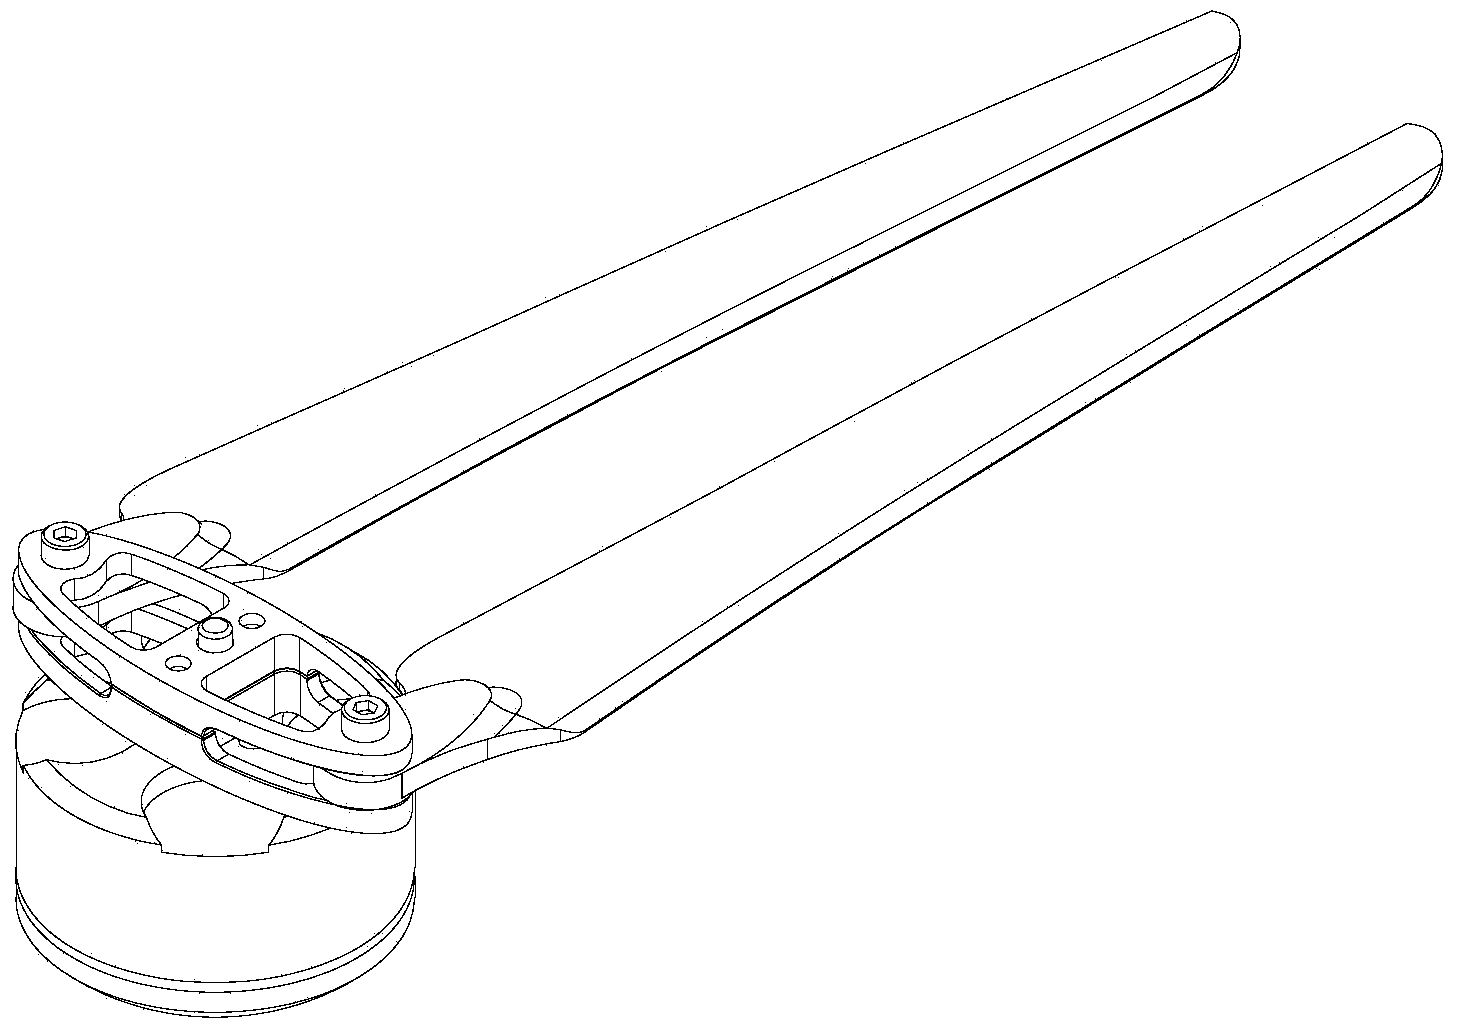 Foldable propeller